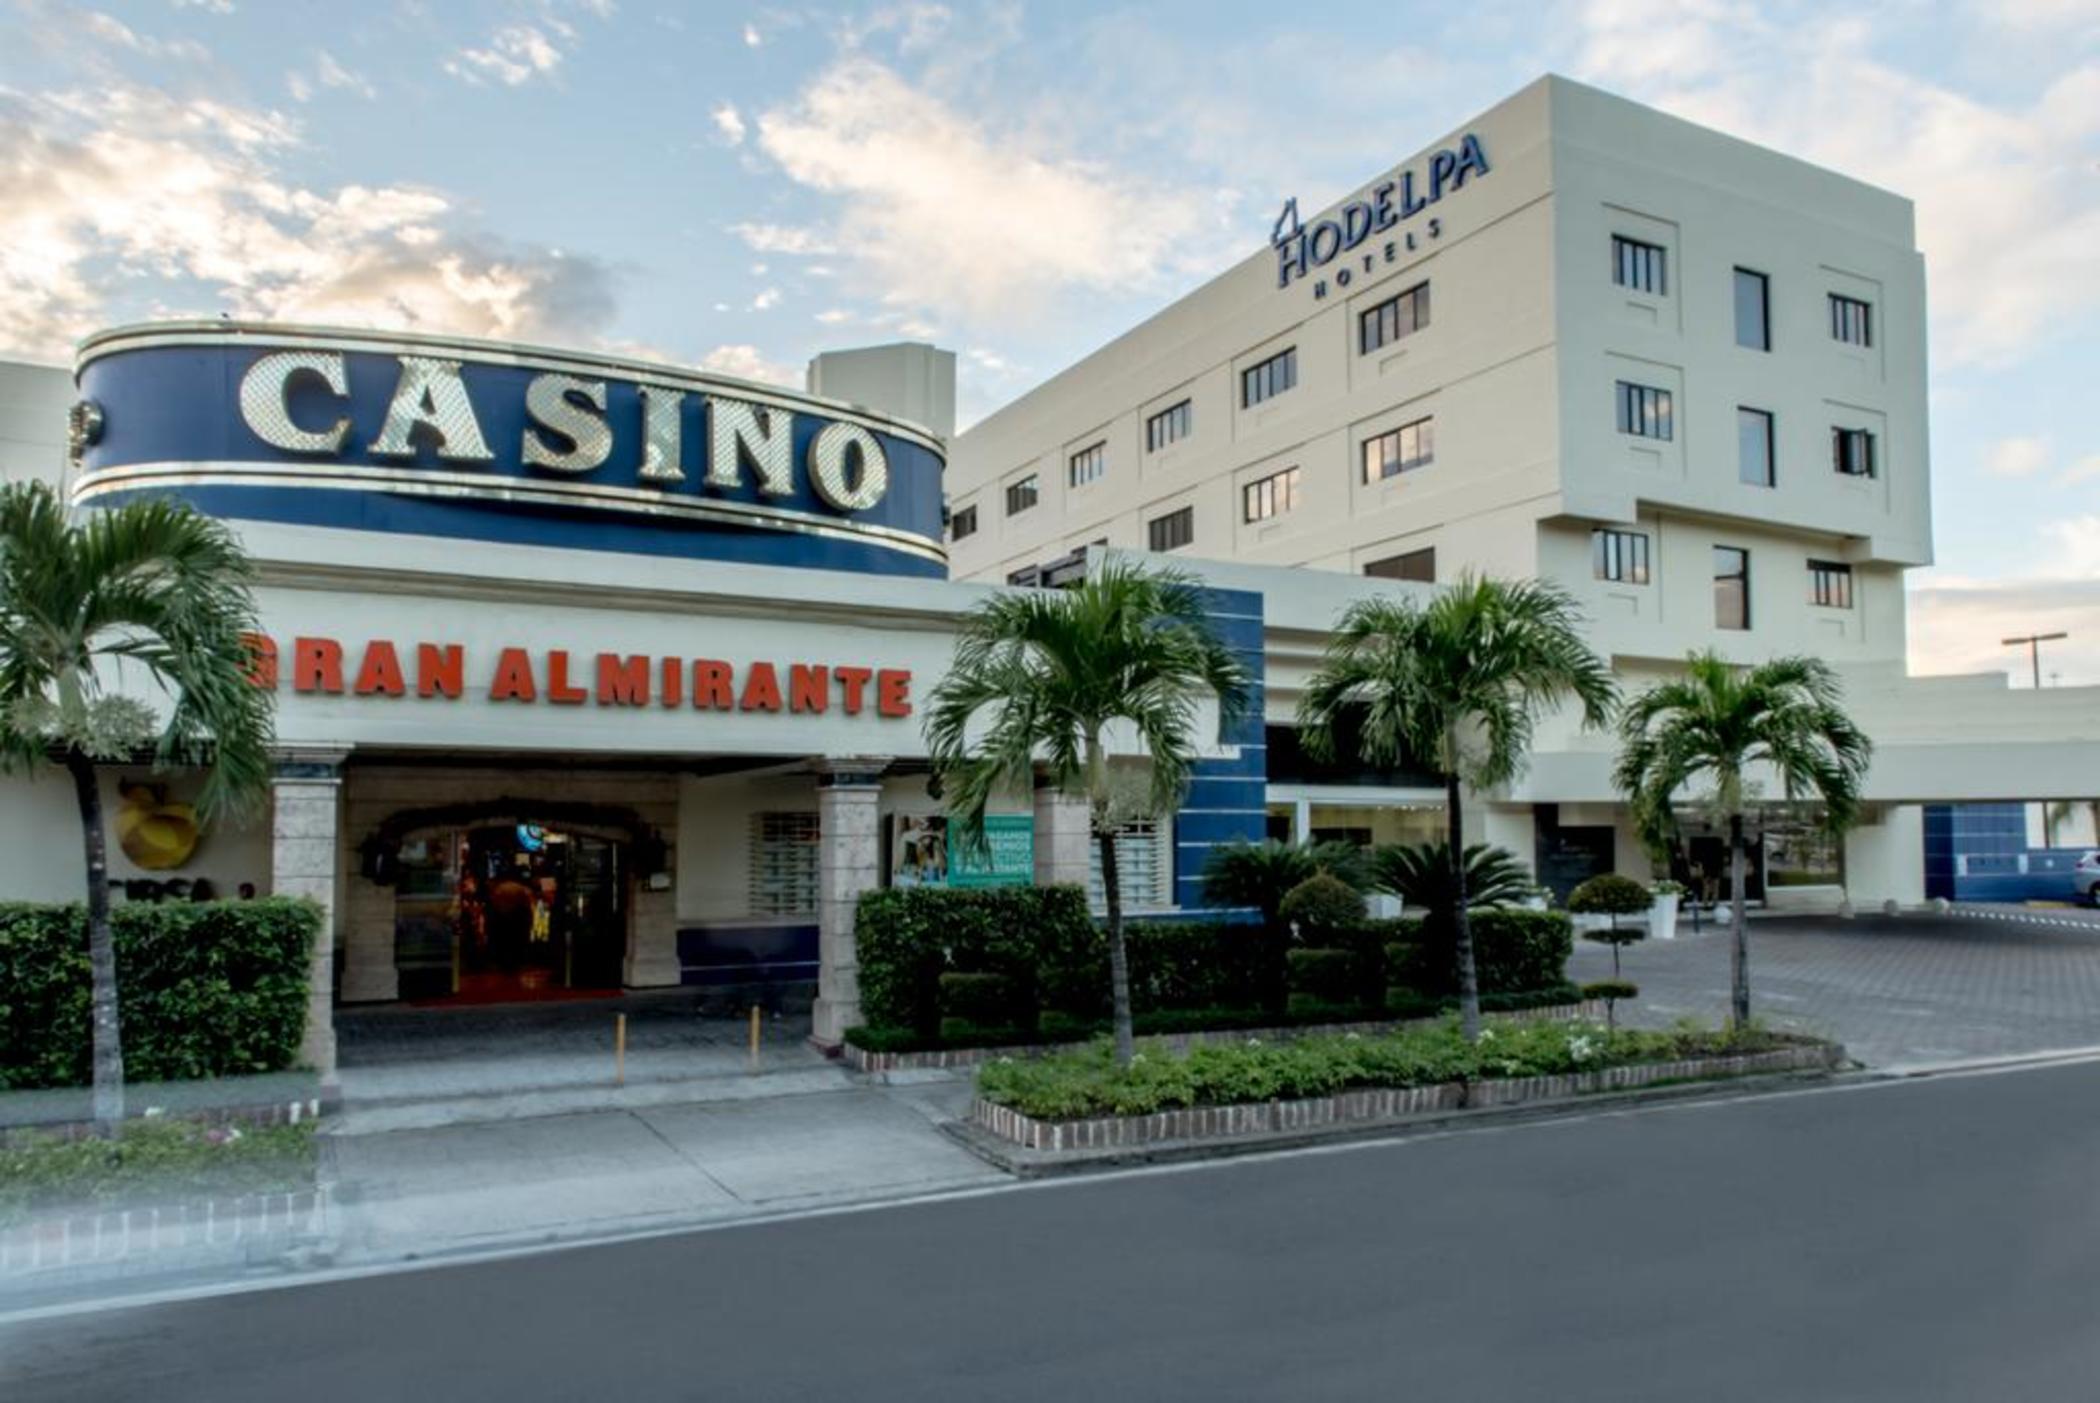 Casino Gran Almirante image